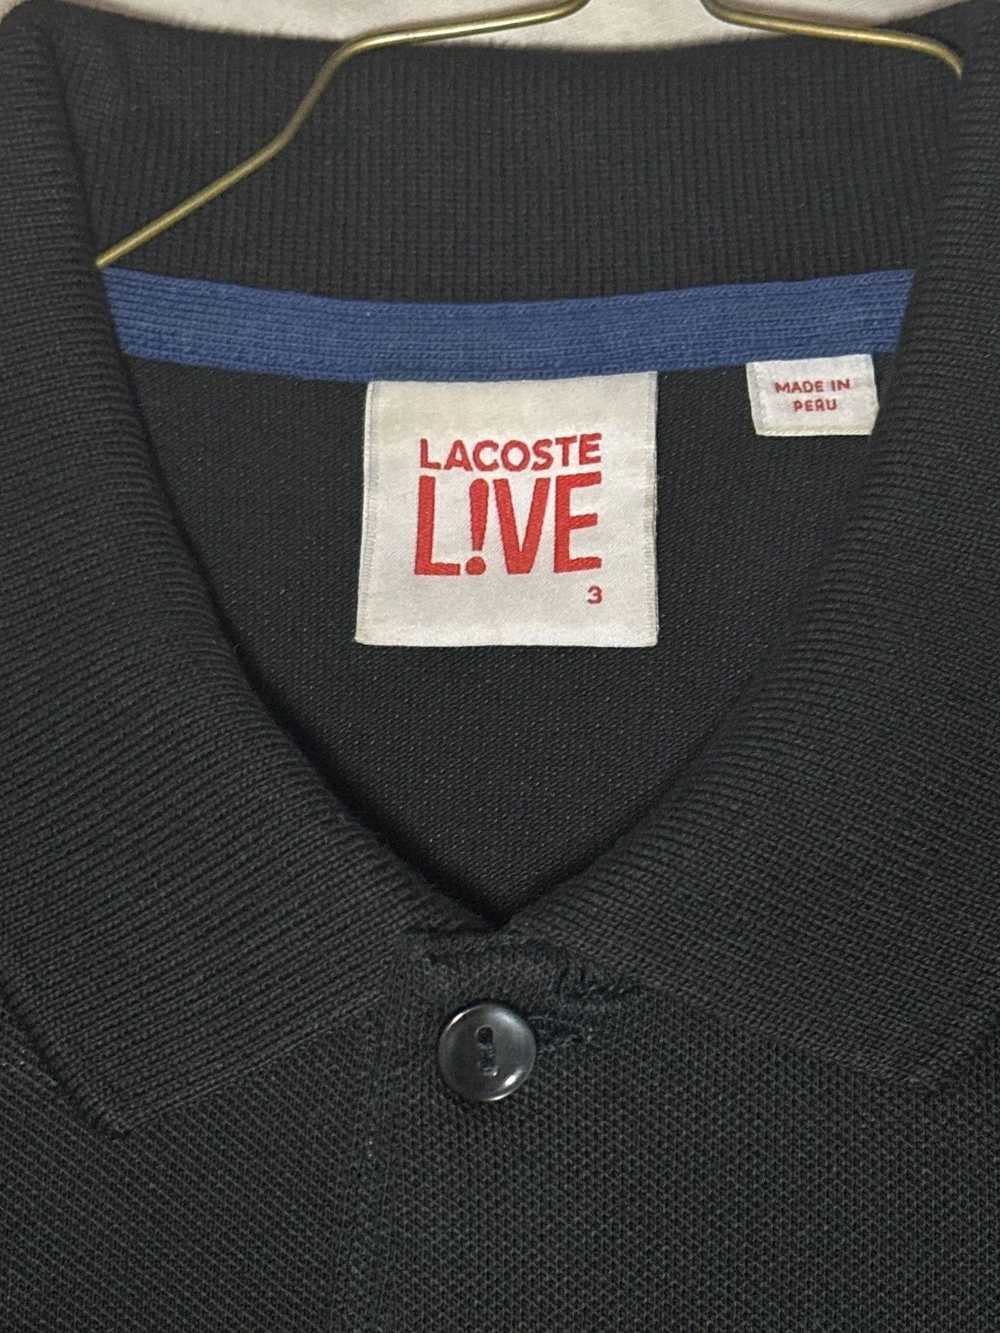 Lacoste Lacoste Live! Black Pique Polo - image 1